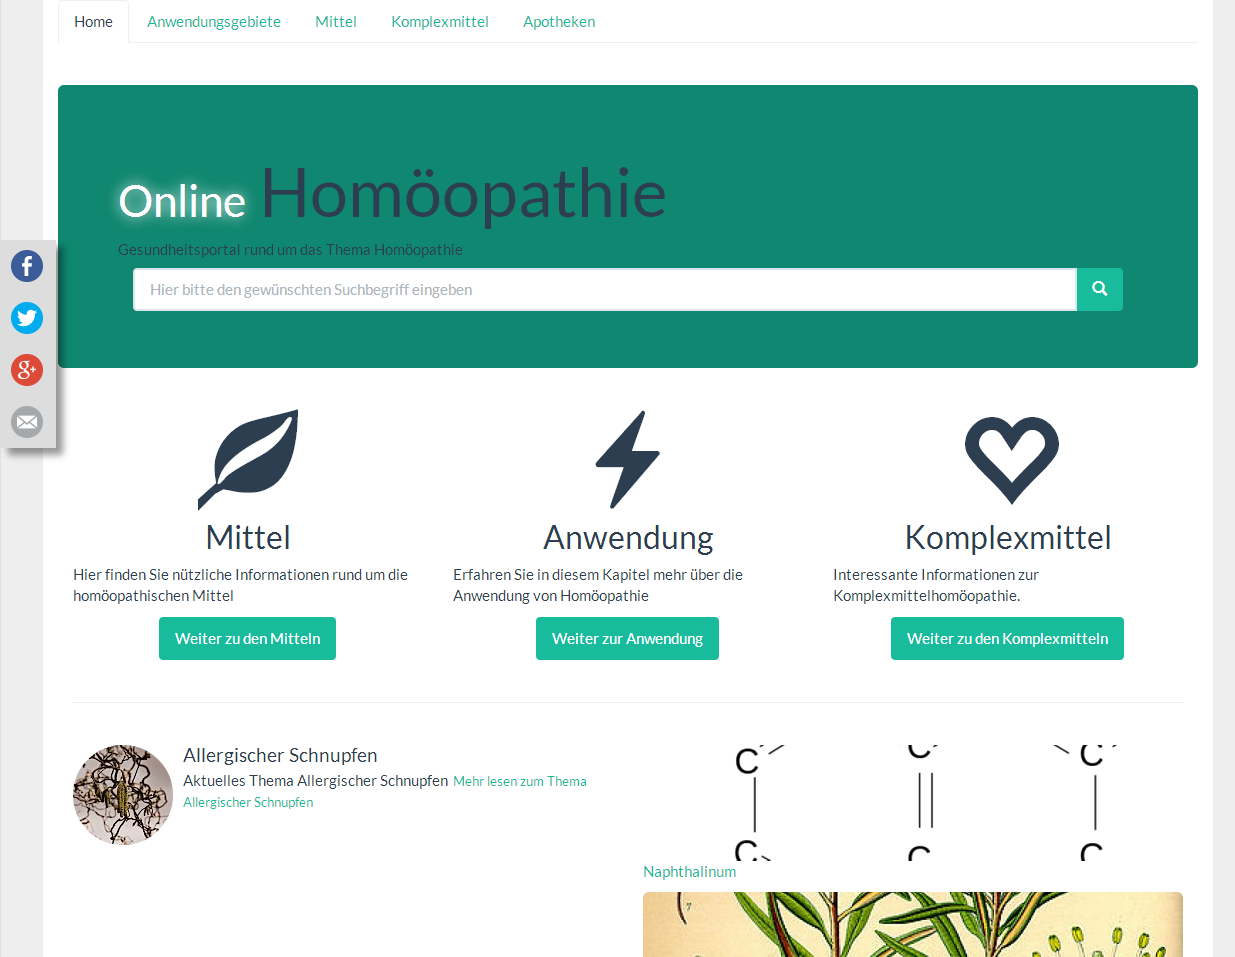 Online Homöopathie